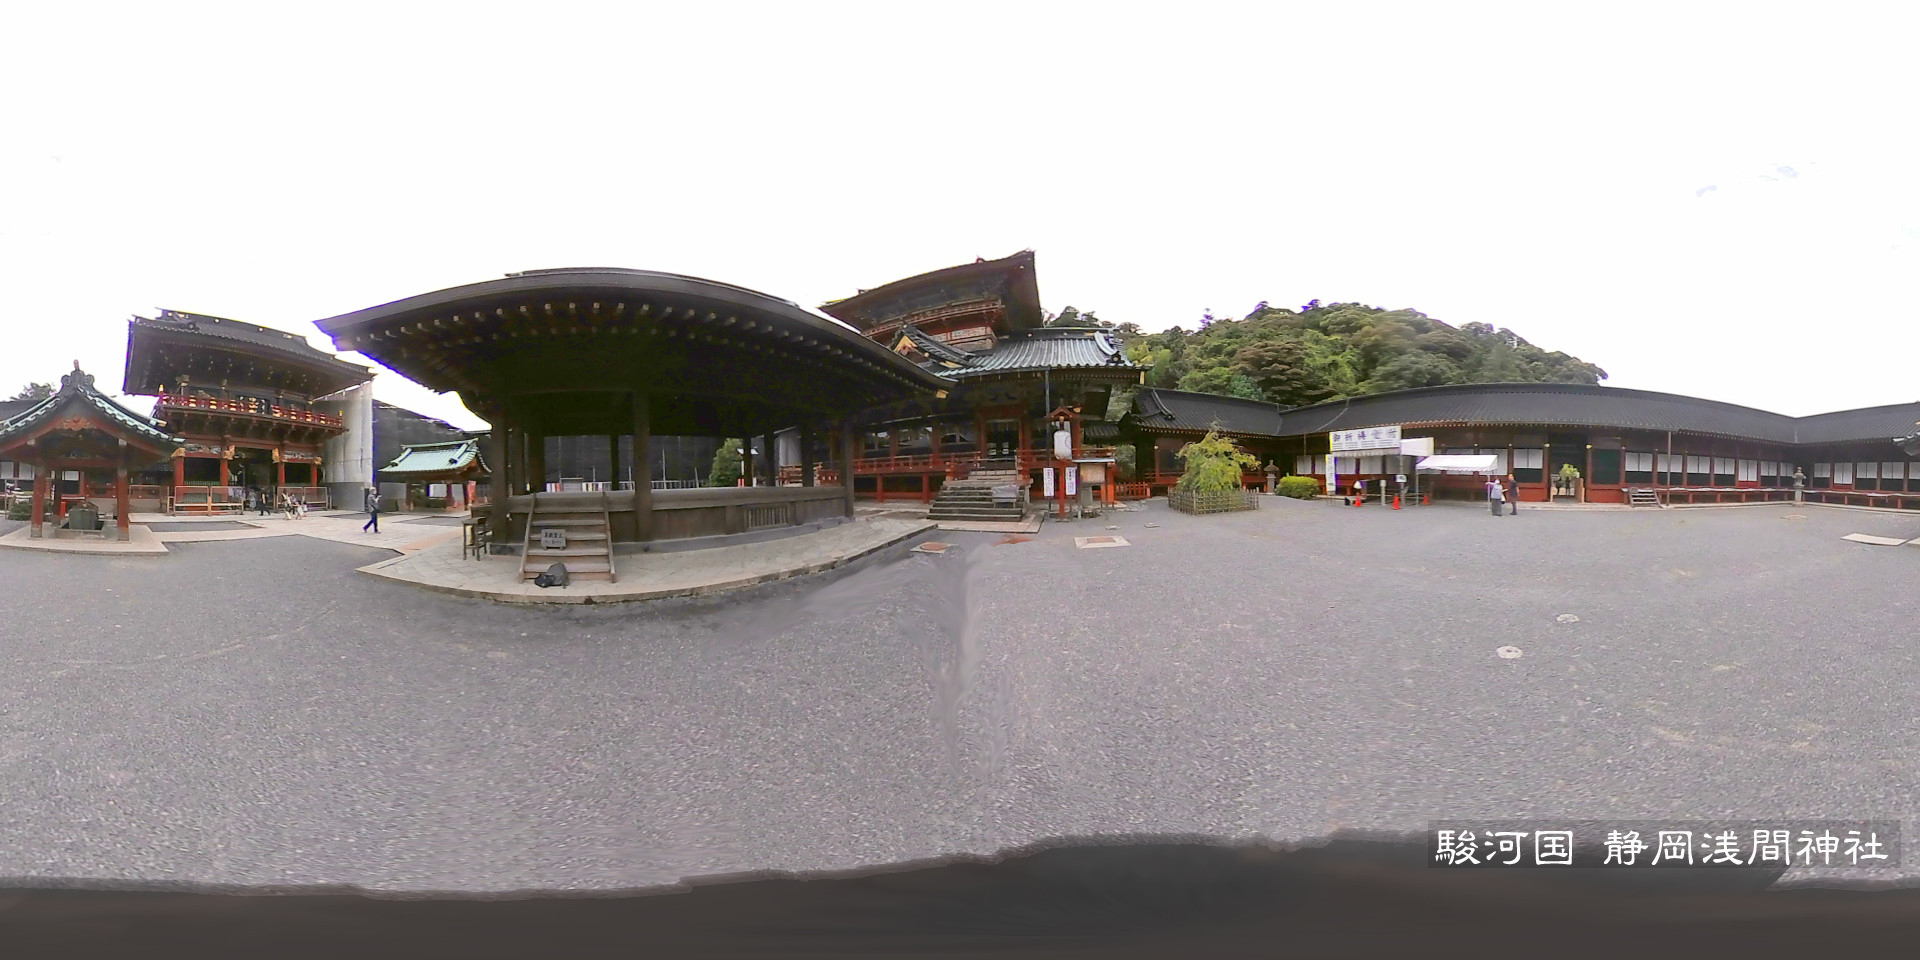 (37) 202307 駿河国 静岡浅間神社